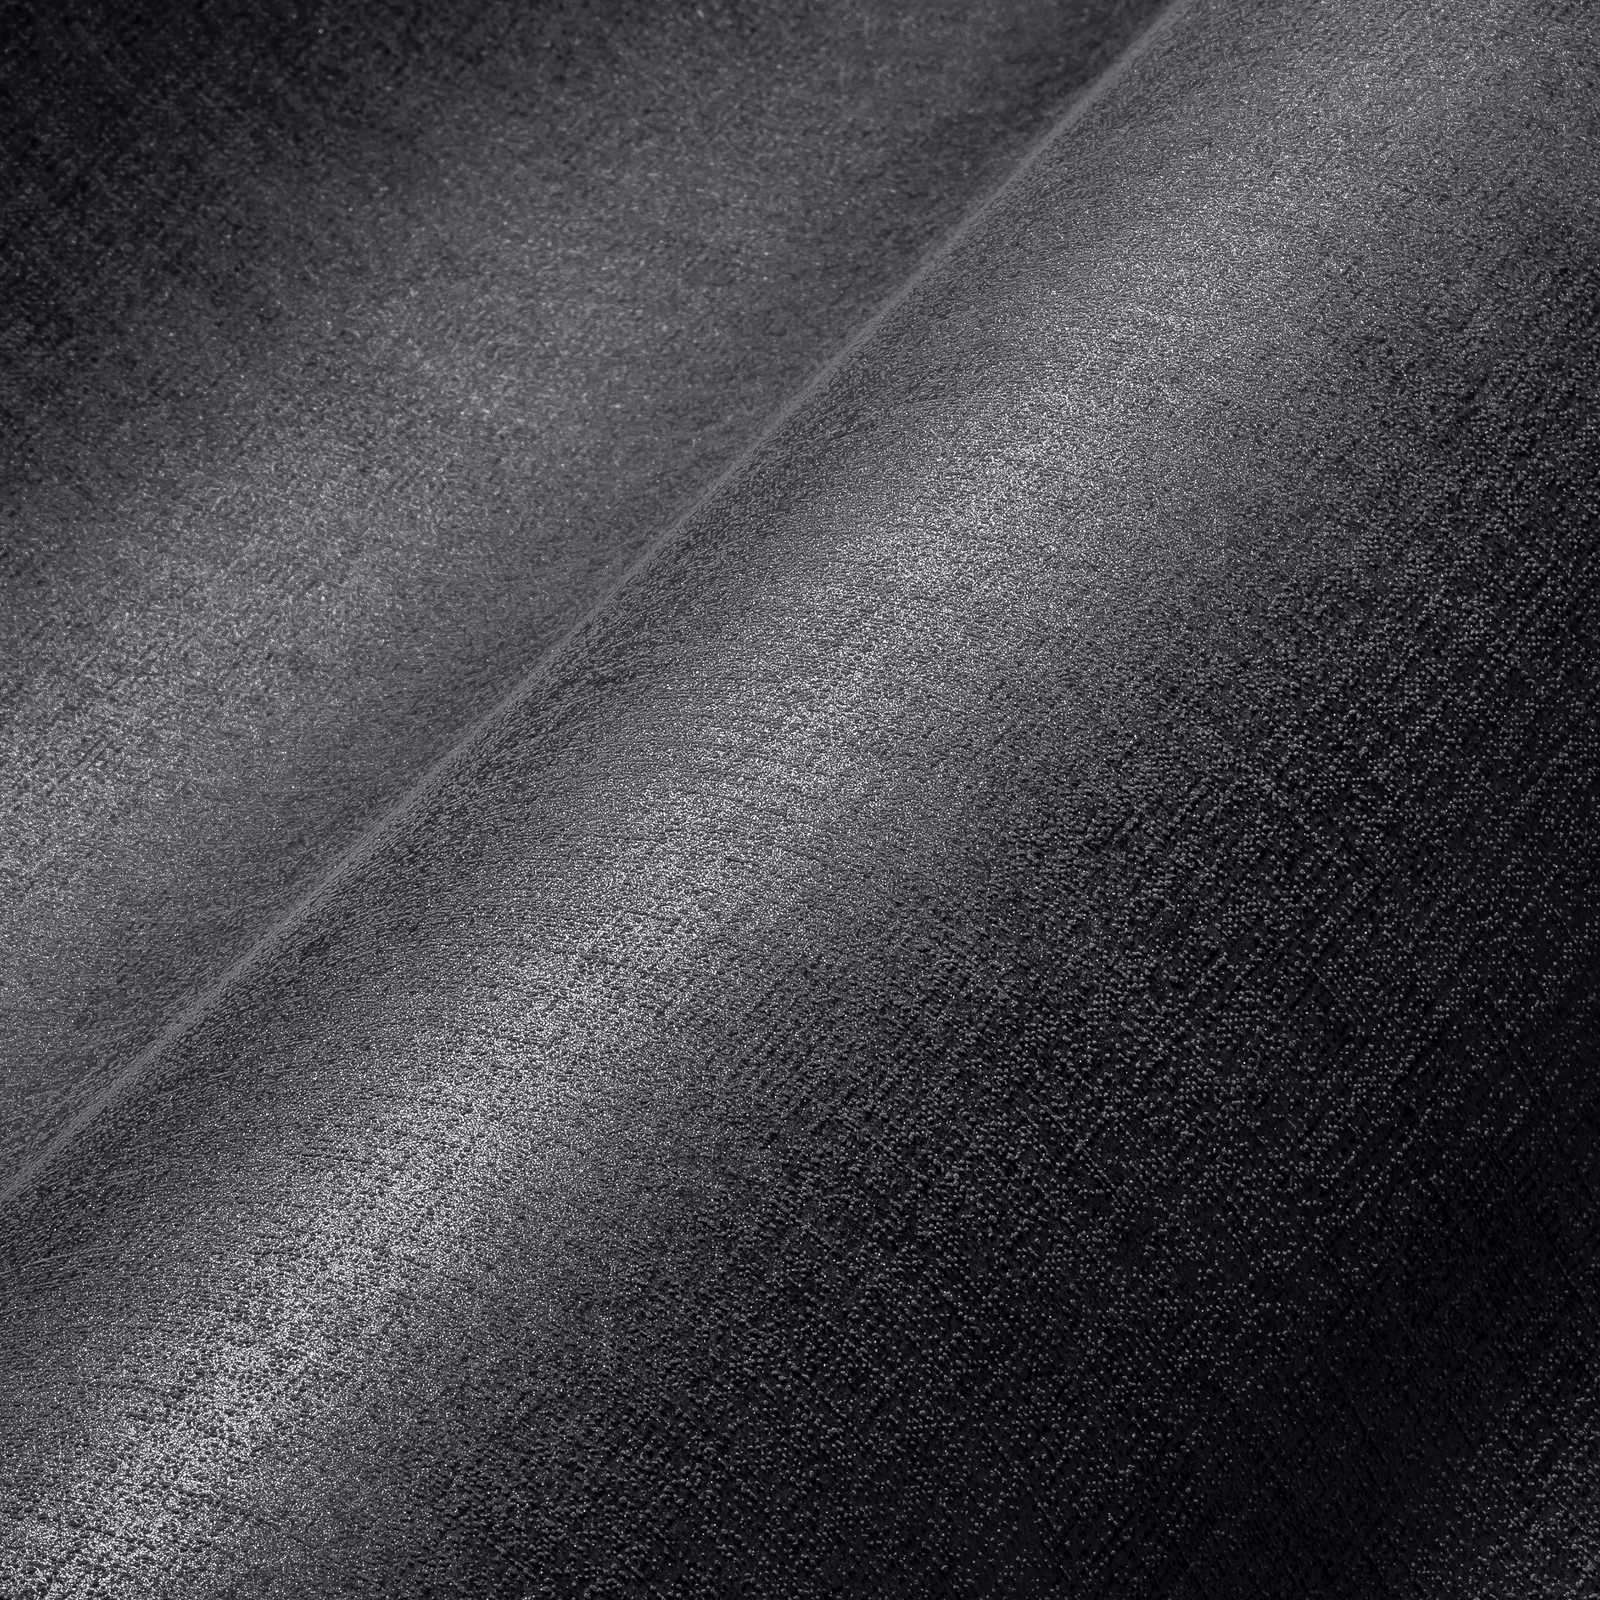             Eenheidsbehang donkergrijs gevlekt met glanseffect - grijs
        